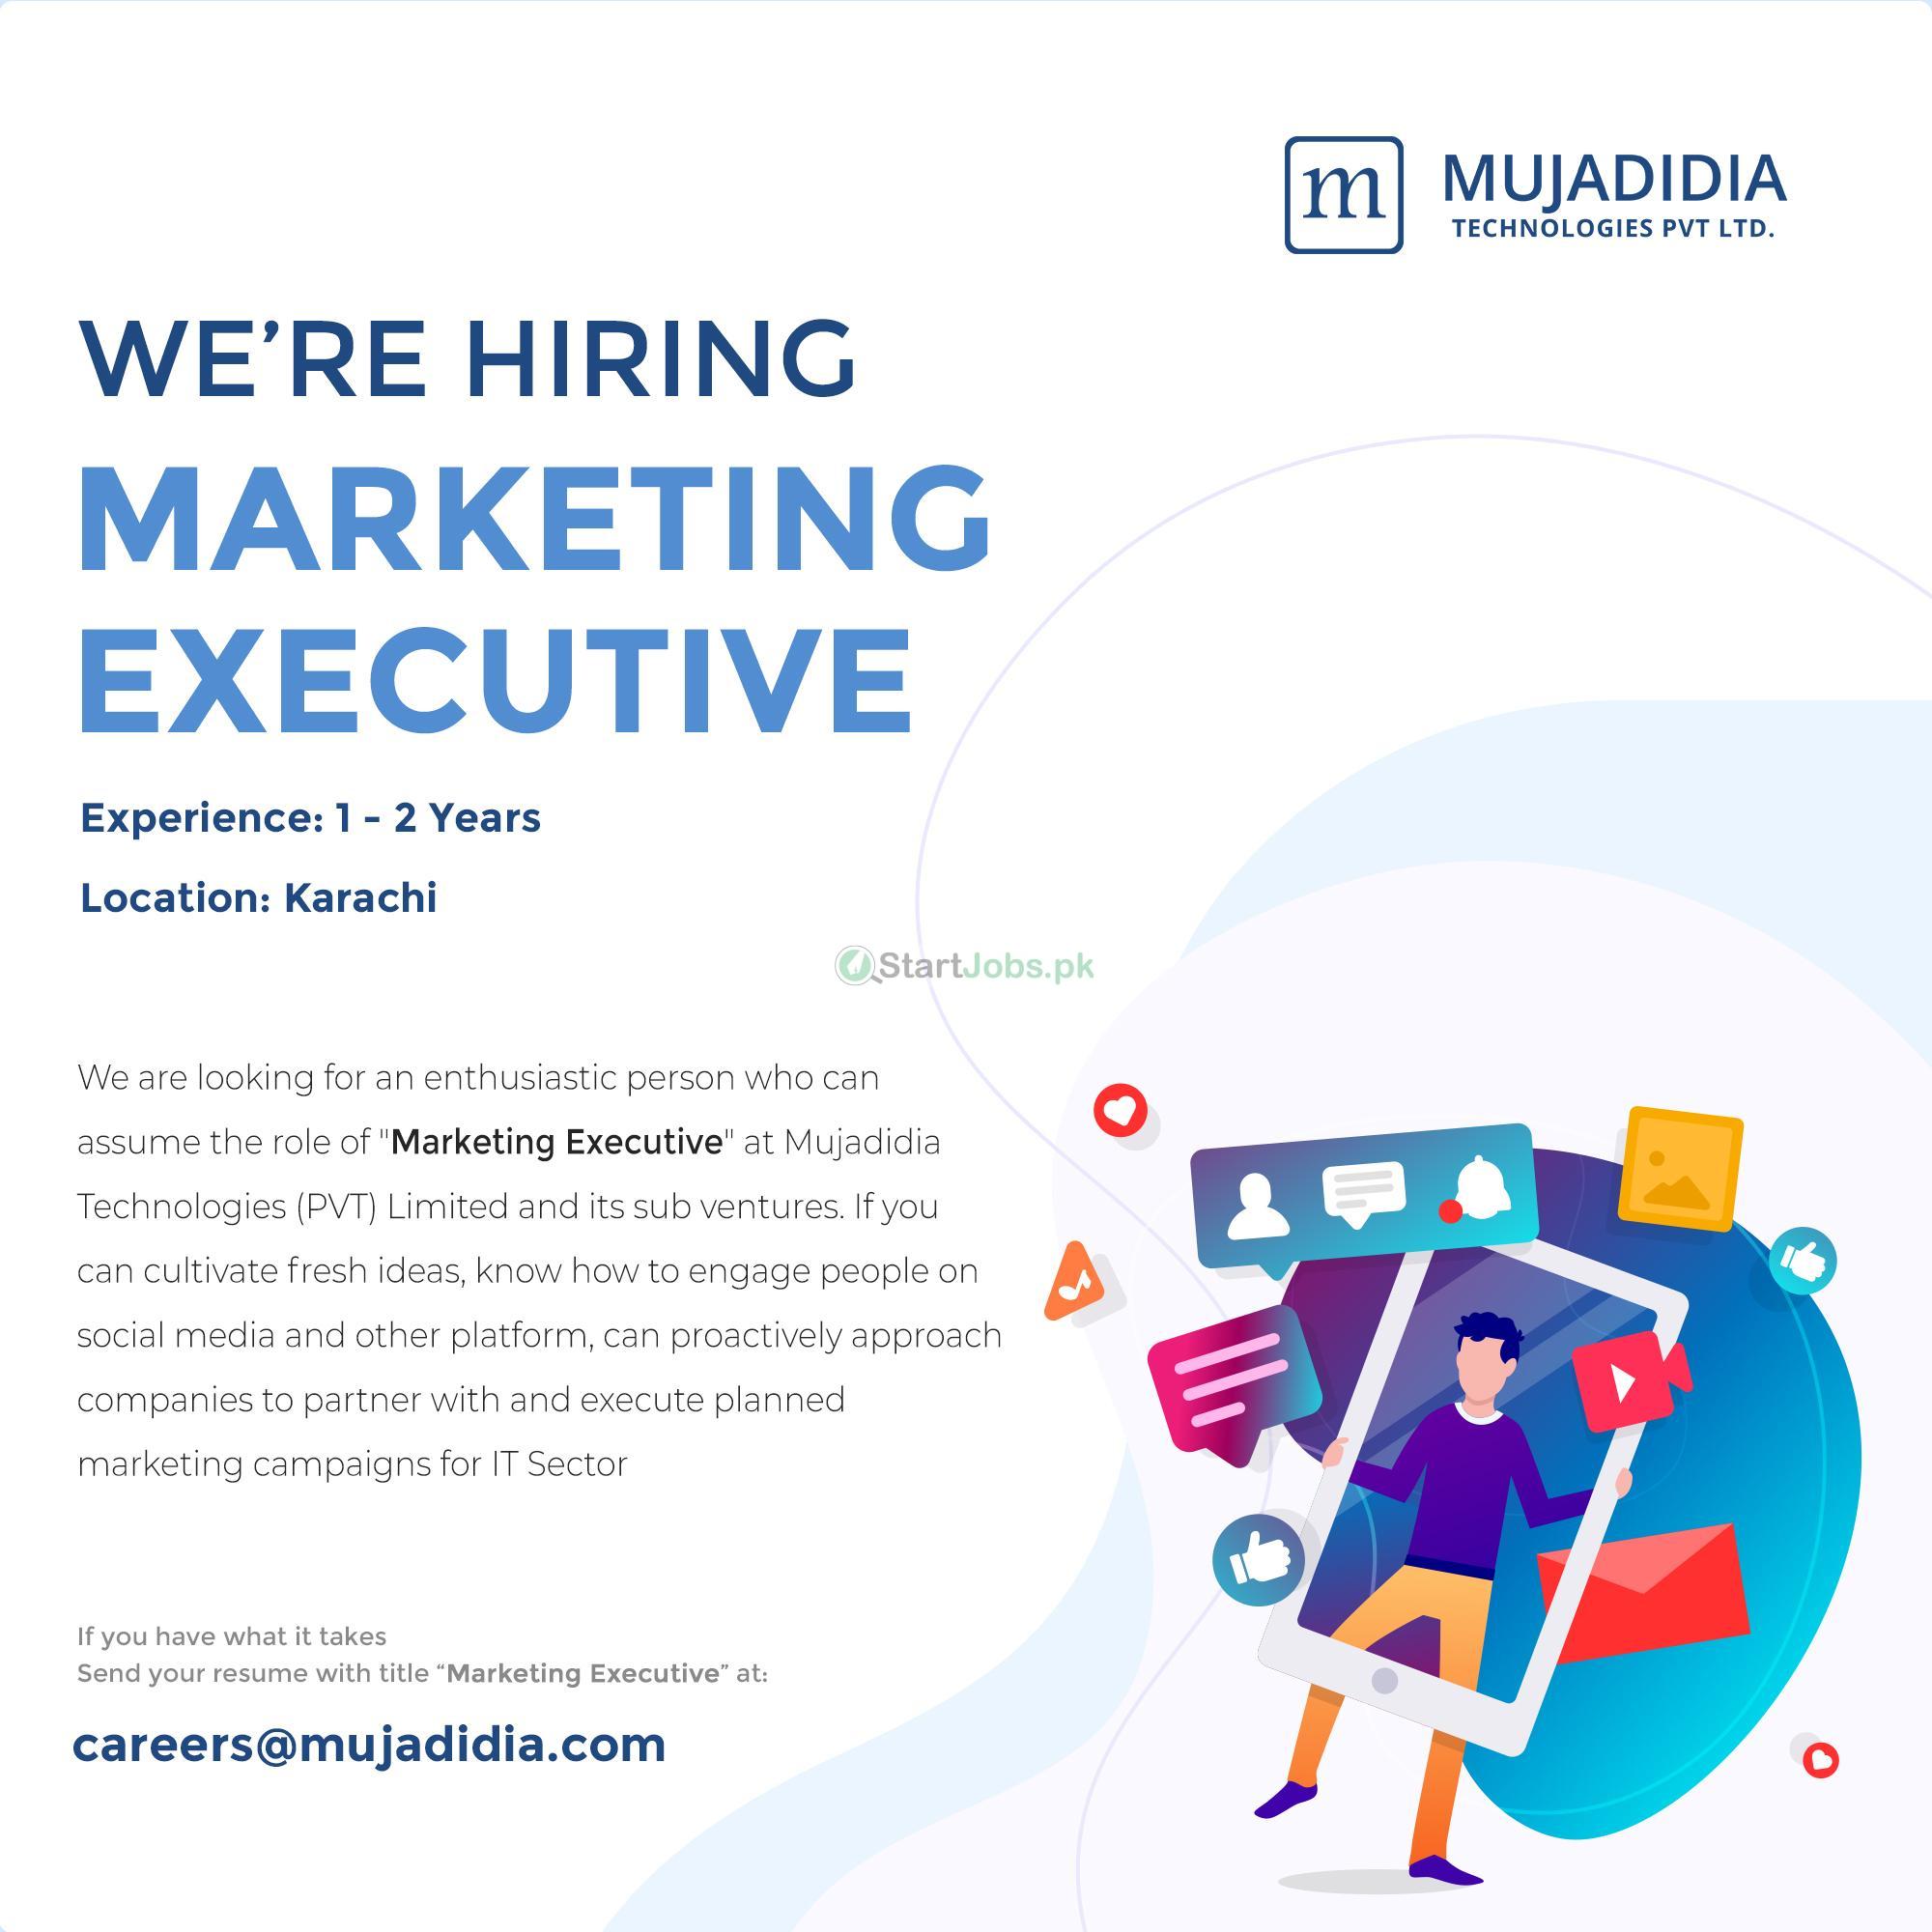 Mujadidia Technologies Pvt Ltd Jobs 2018